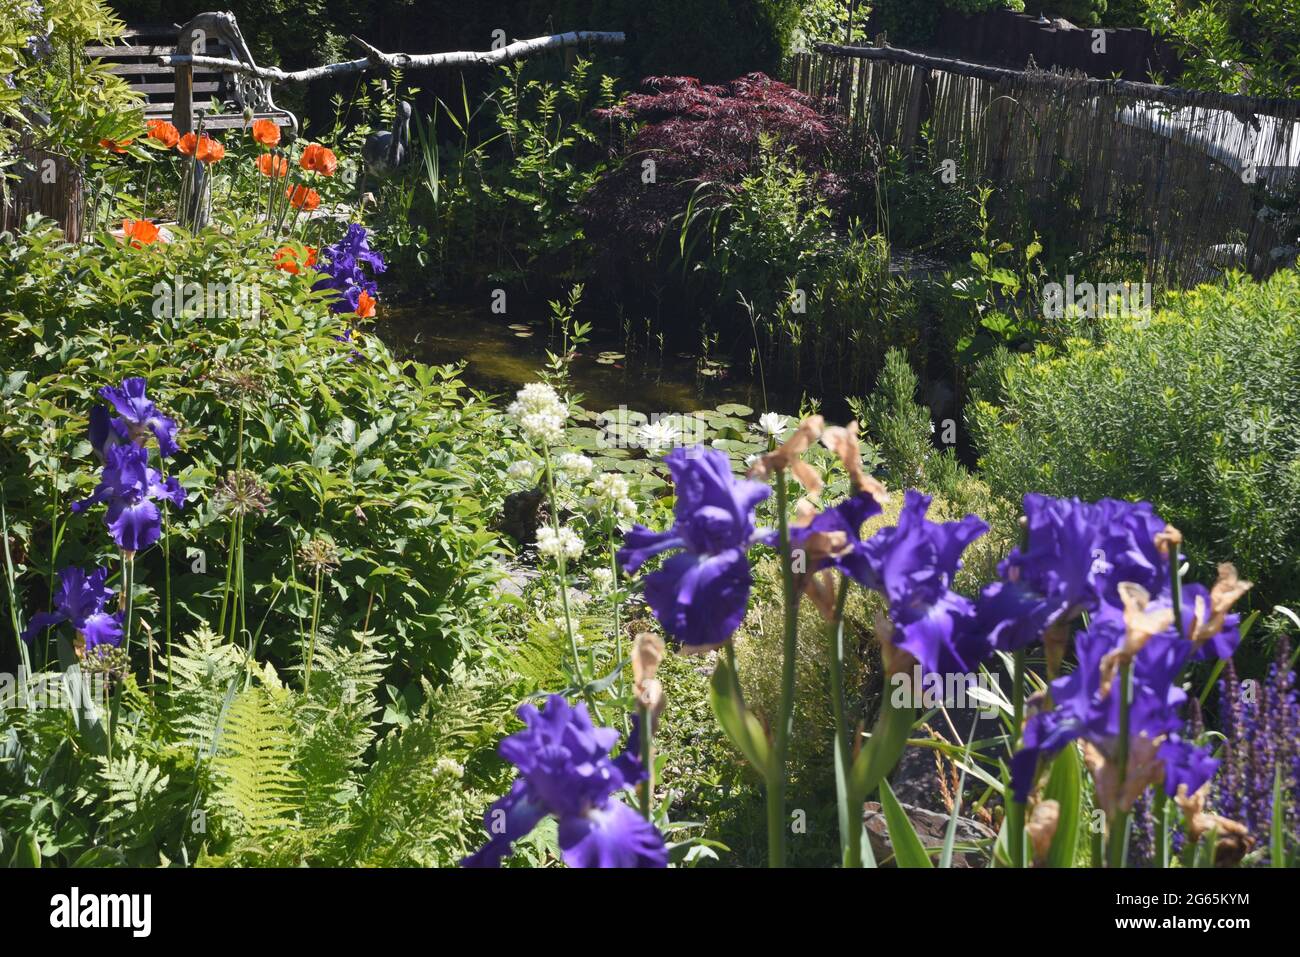 Gartenteich, mit Seerosen und anderen Wasserpflanzen und Blumen gehoert in jeden Garten der was hermacht. Garden pond, with water lilies and other wat Stock Photo